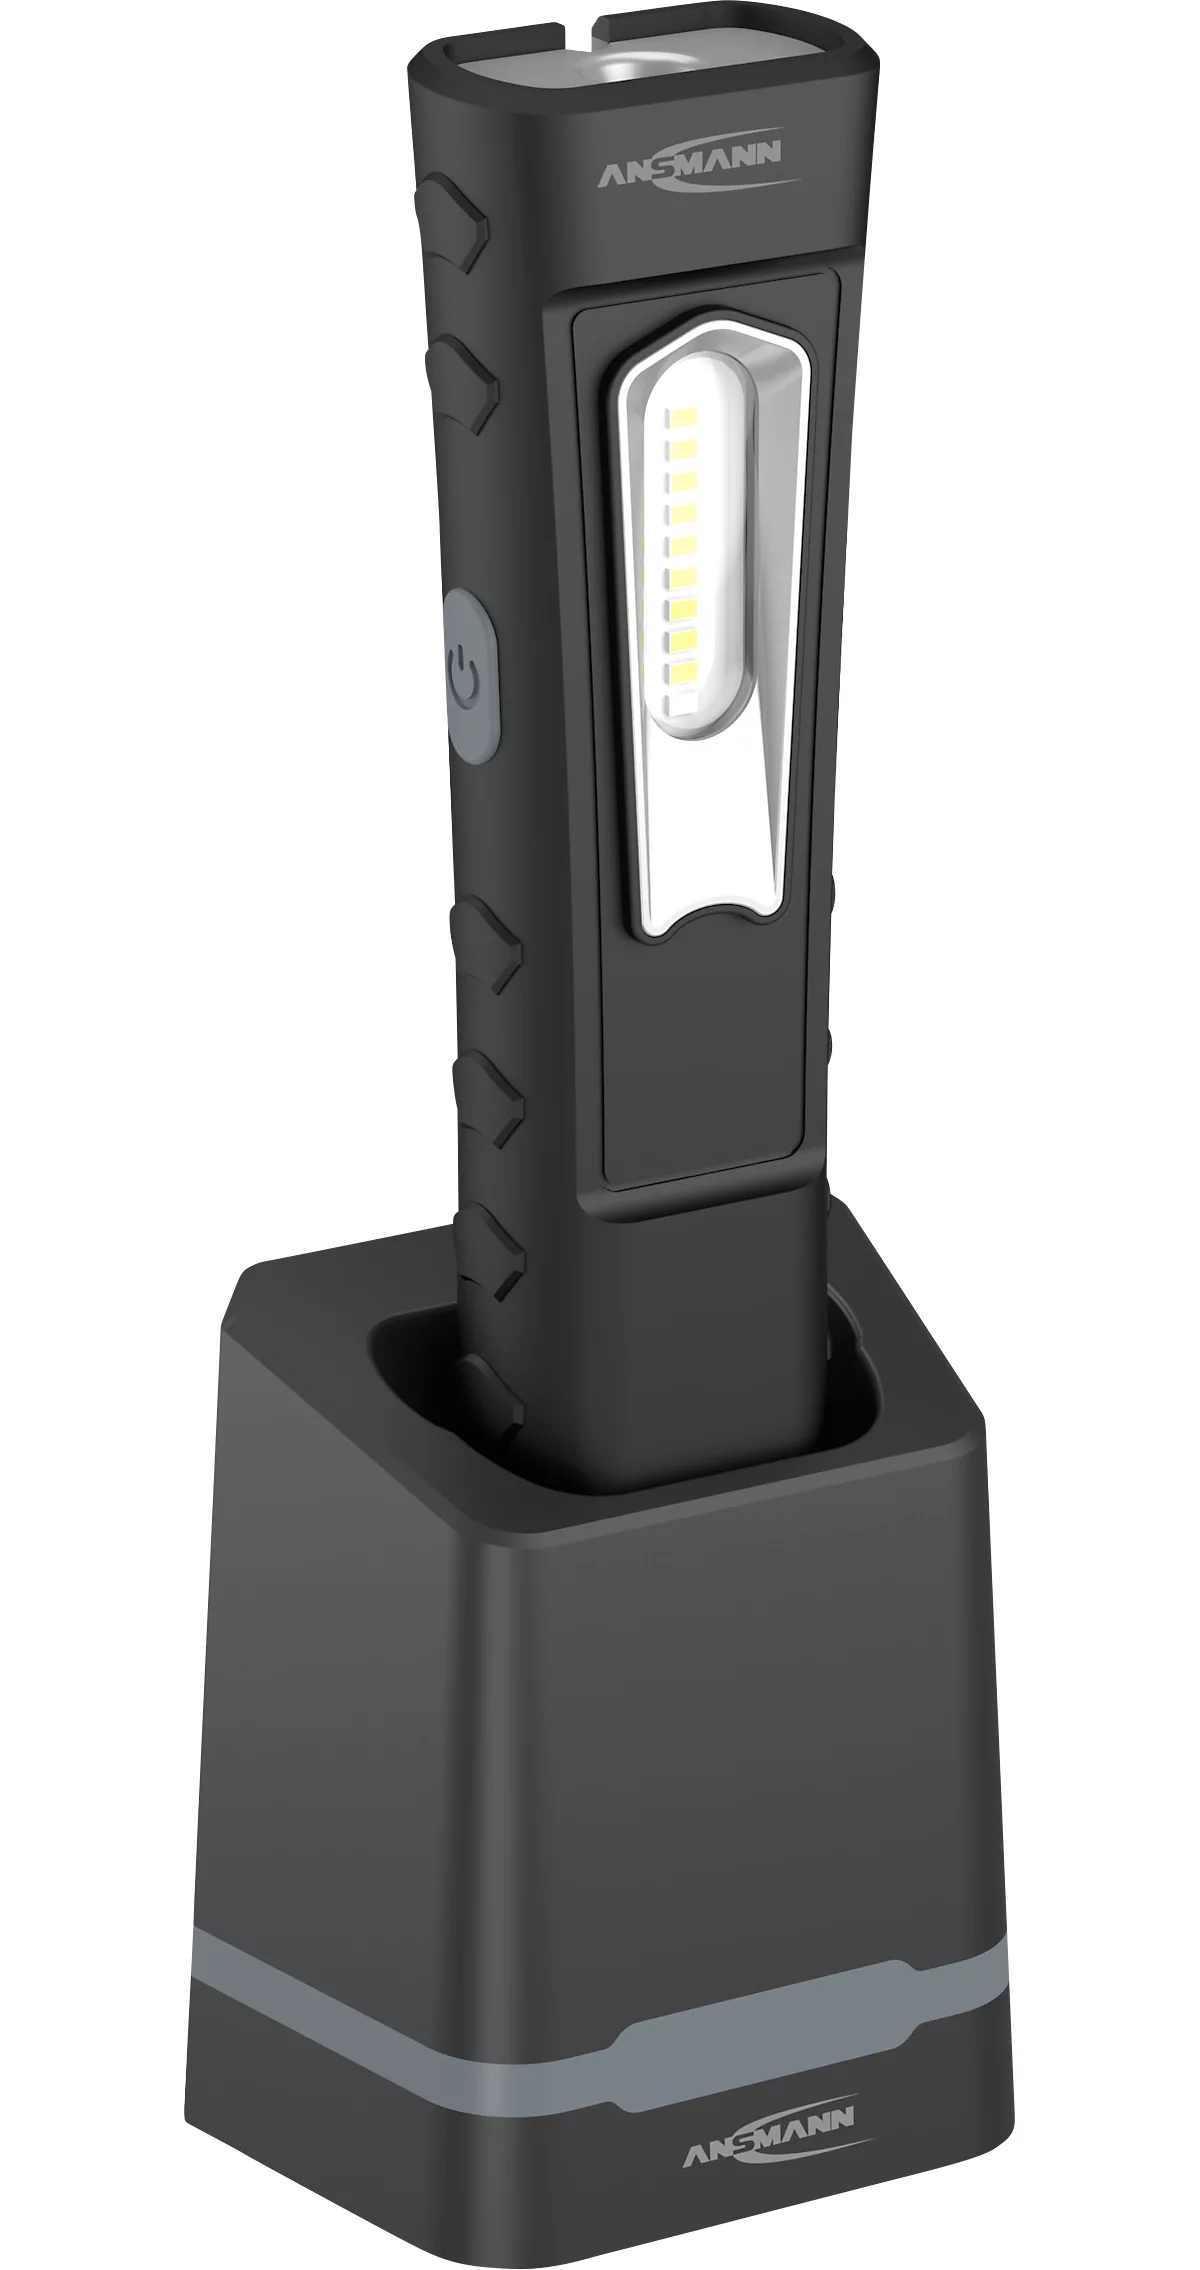 LED-Werkstattleuchte Ansmann WL1000R, 1000 lm (Hauptleuchte), 180 lm (Knopfleuchte), bis zu 46 h, B 57,5 × T 37,5 × H 256 mm, Kunststoff, schwarz